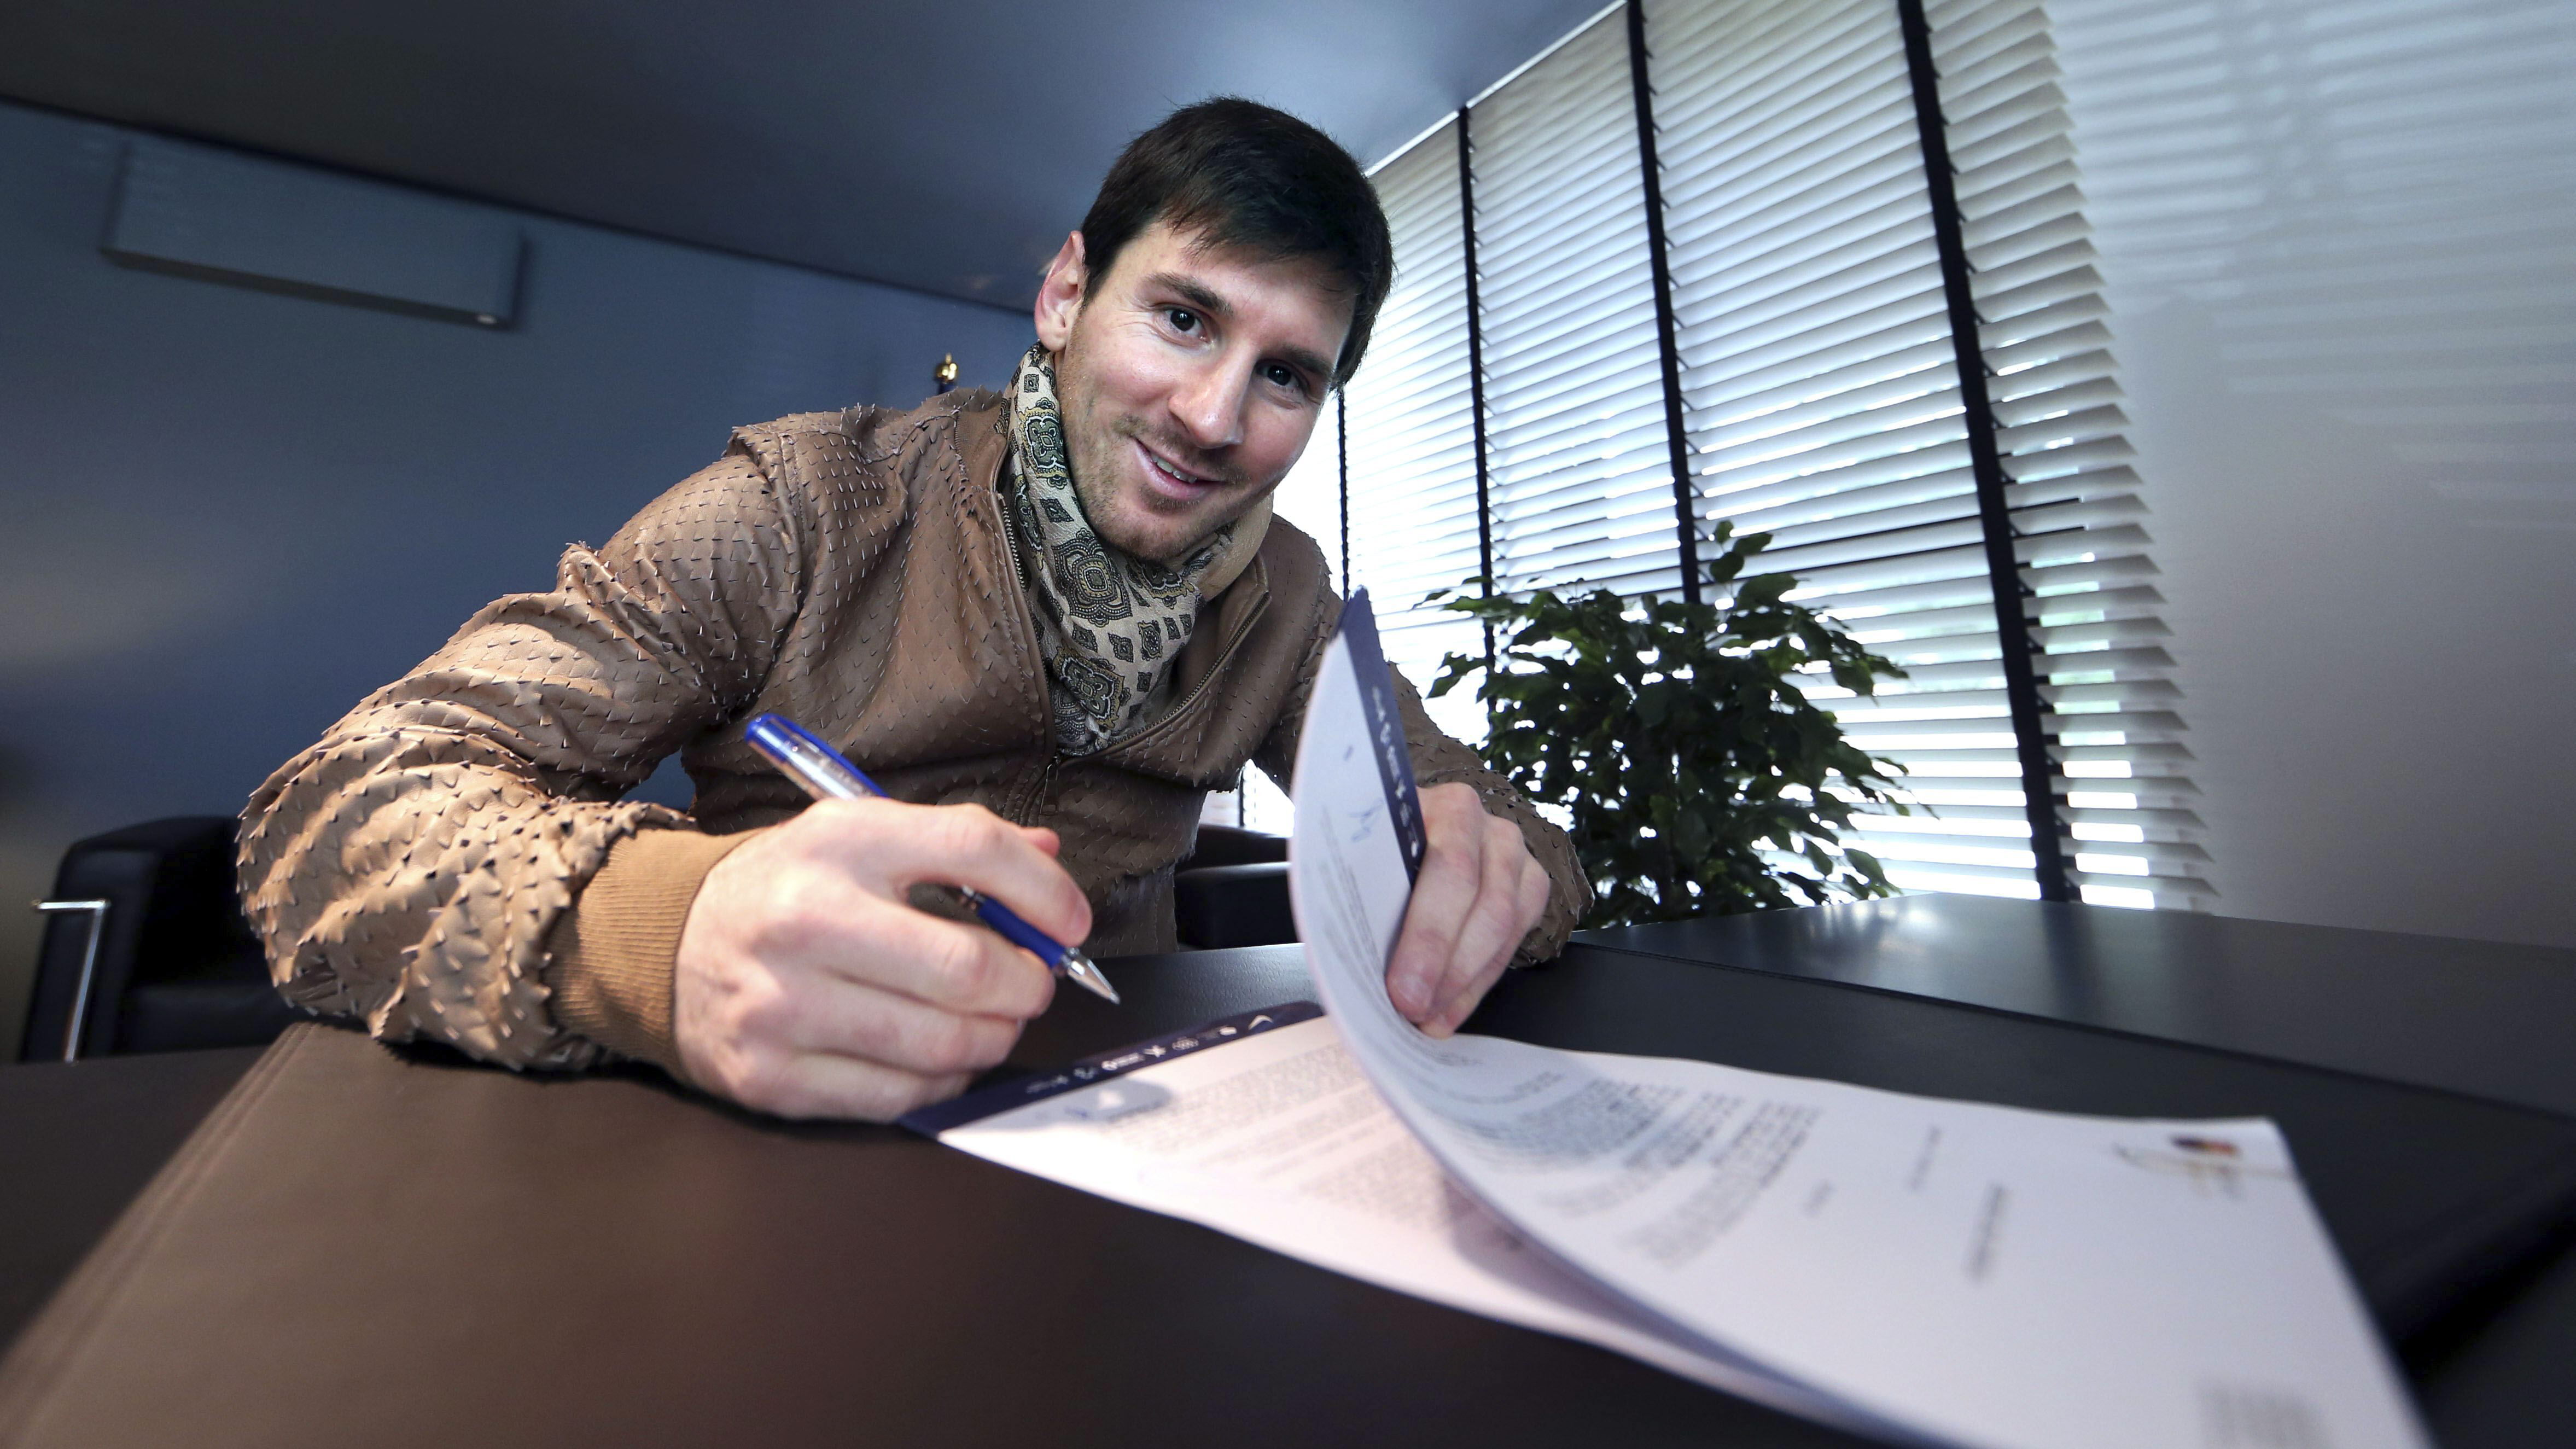 Fotografía facilitada por el FC Barcelona del delantero argentino, Lionel Messi, en las oficinas del club azulgrana en el momento de la firma de la ampliación de su contrato, en 2013 (EFE)